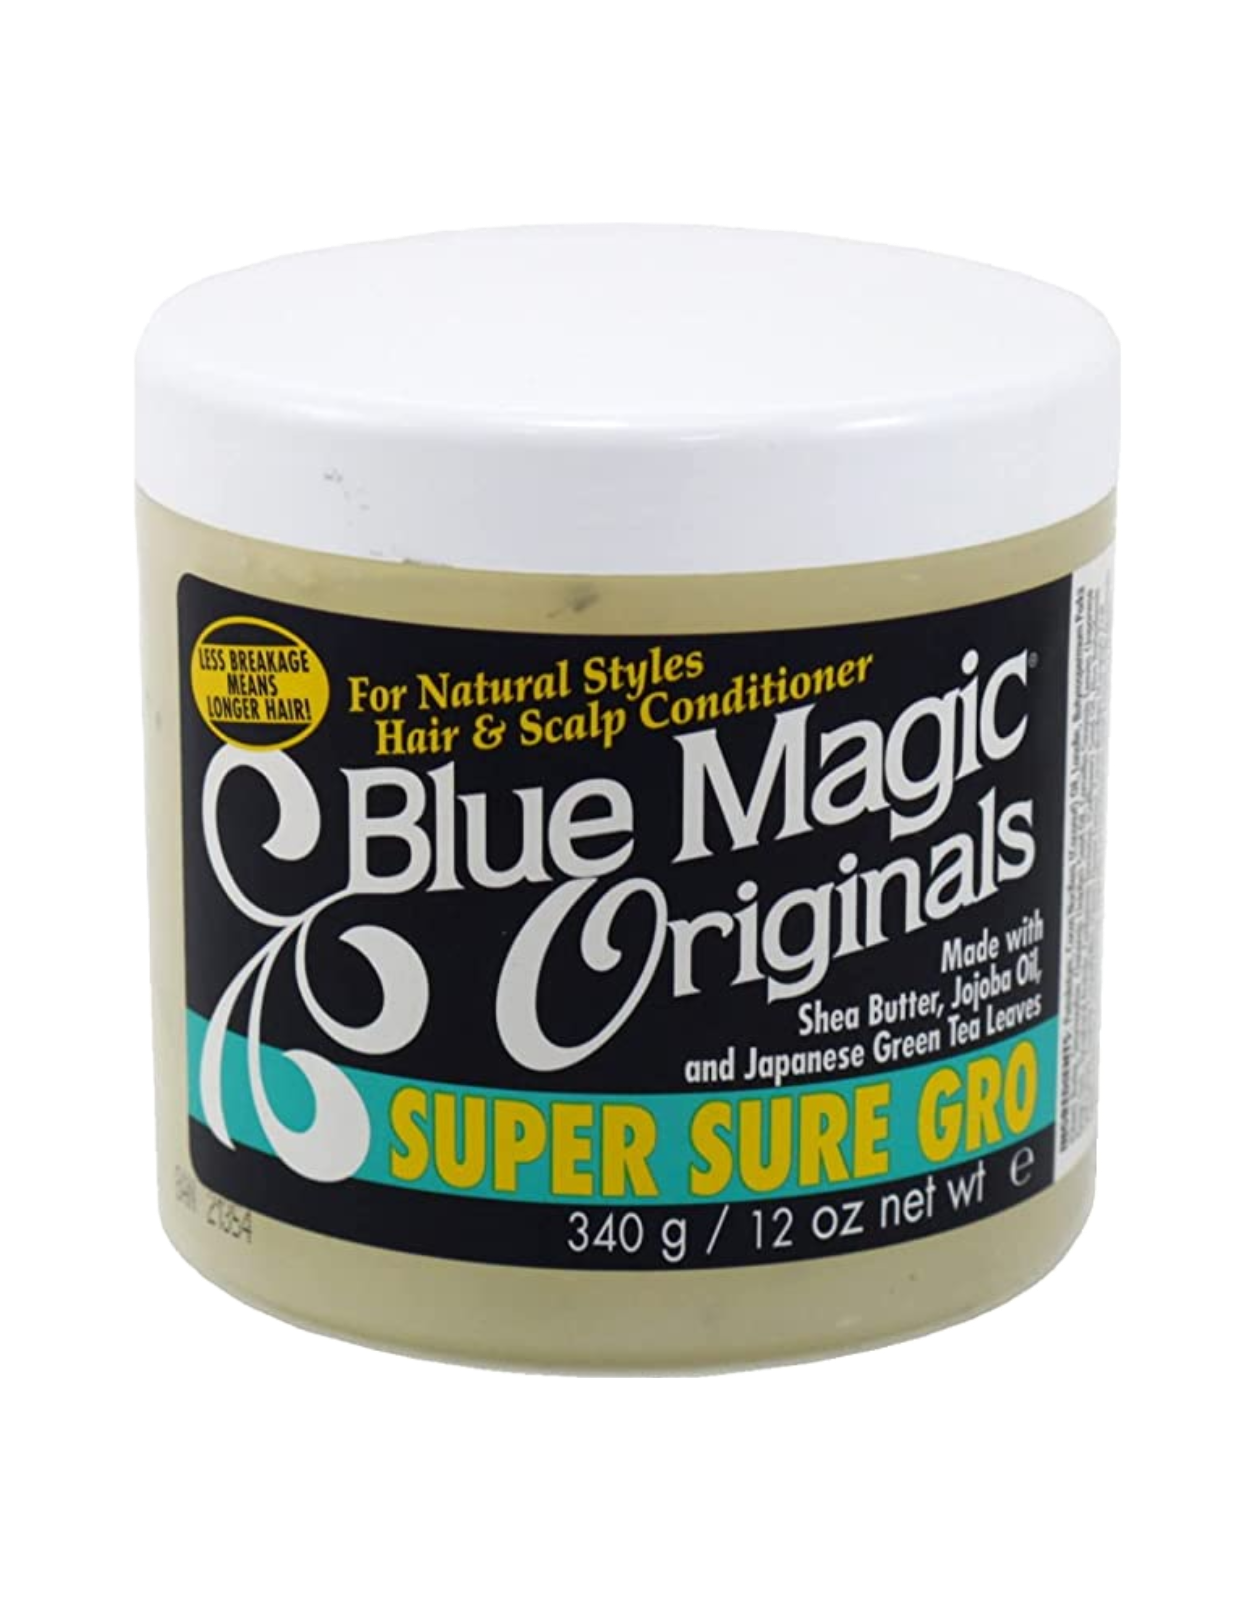 Blue Magic Originals - Super Sure Gro